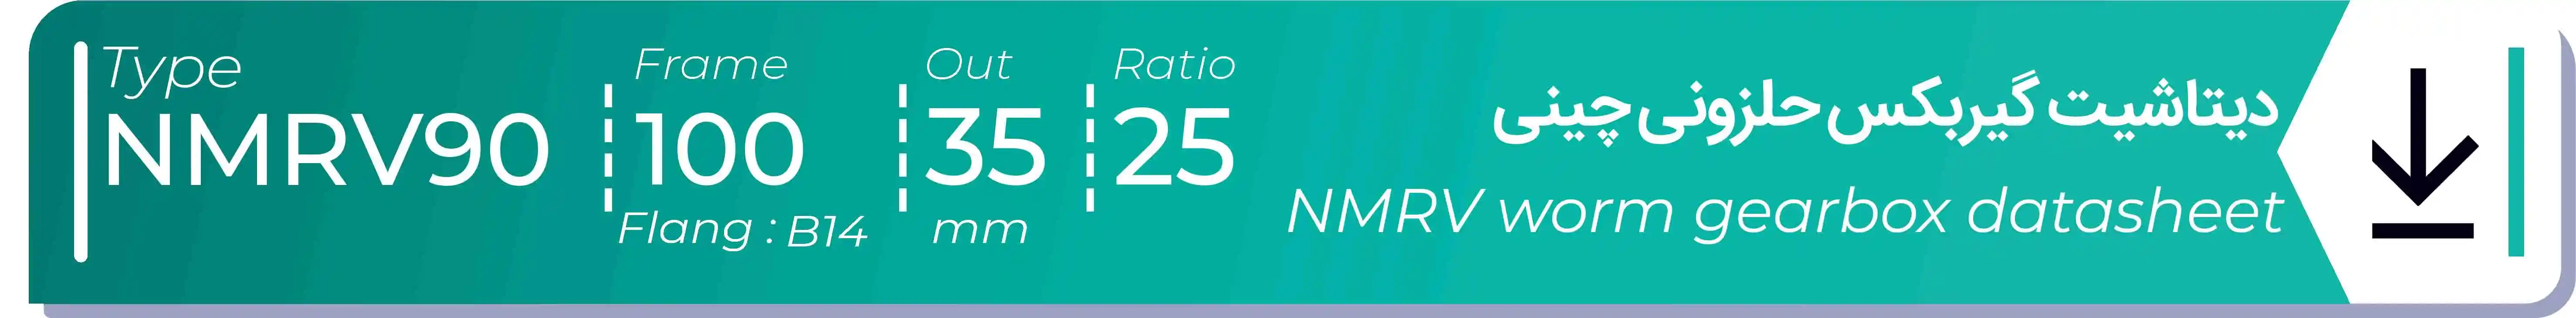  دیتاشیت و مشخصات فنی گیربکس حلزونی چینی   NMRV90  -  با خروجی 35- میلی متر و نسبت25 و فریم 100